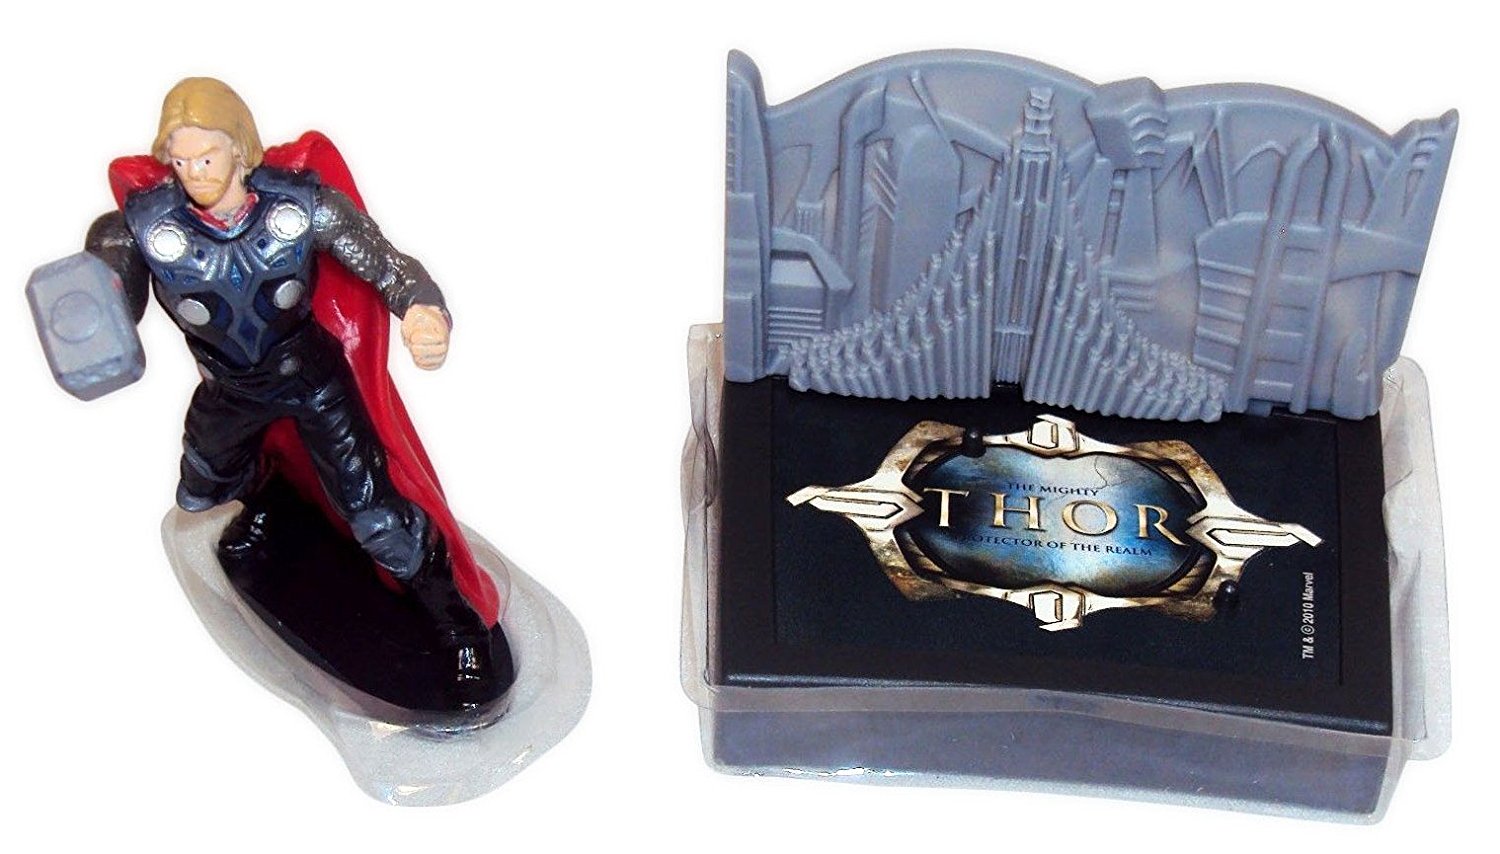 Thor in Vest Superhero Love & Thunder Cake Topper Figurine Figure 4”  Detailed | eBay